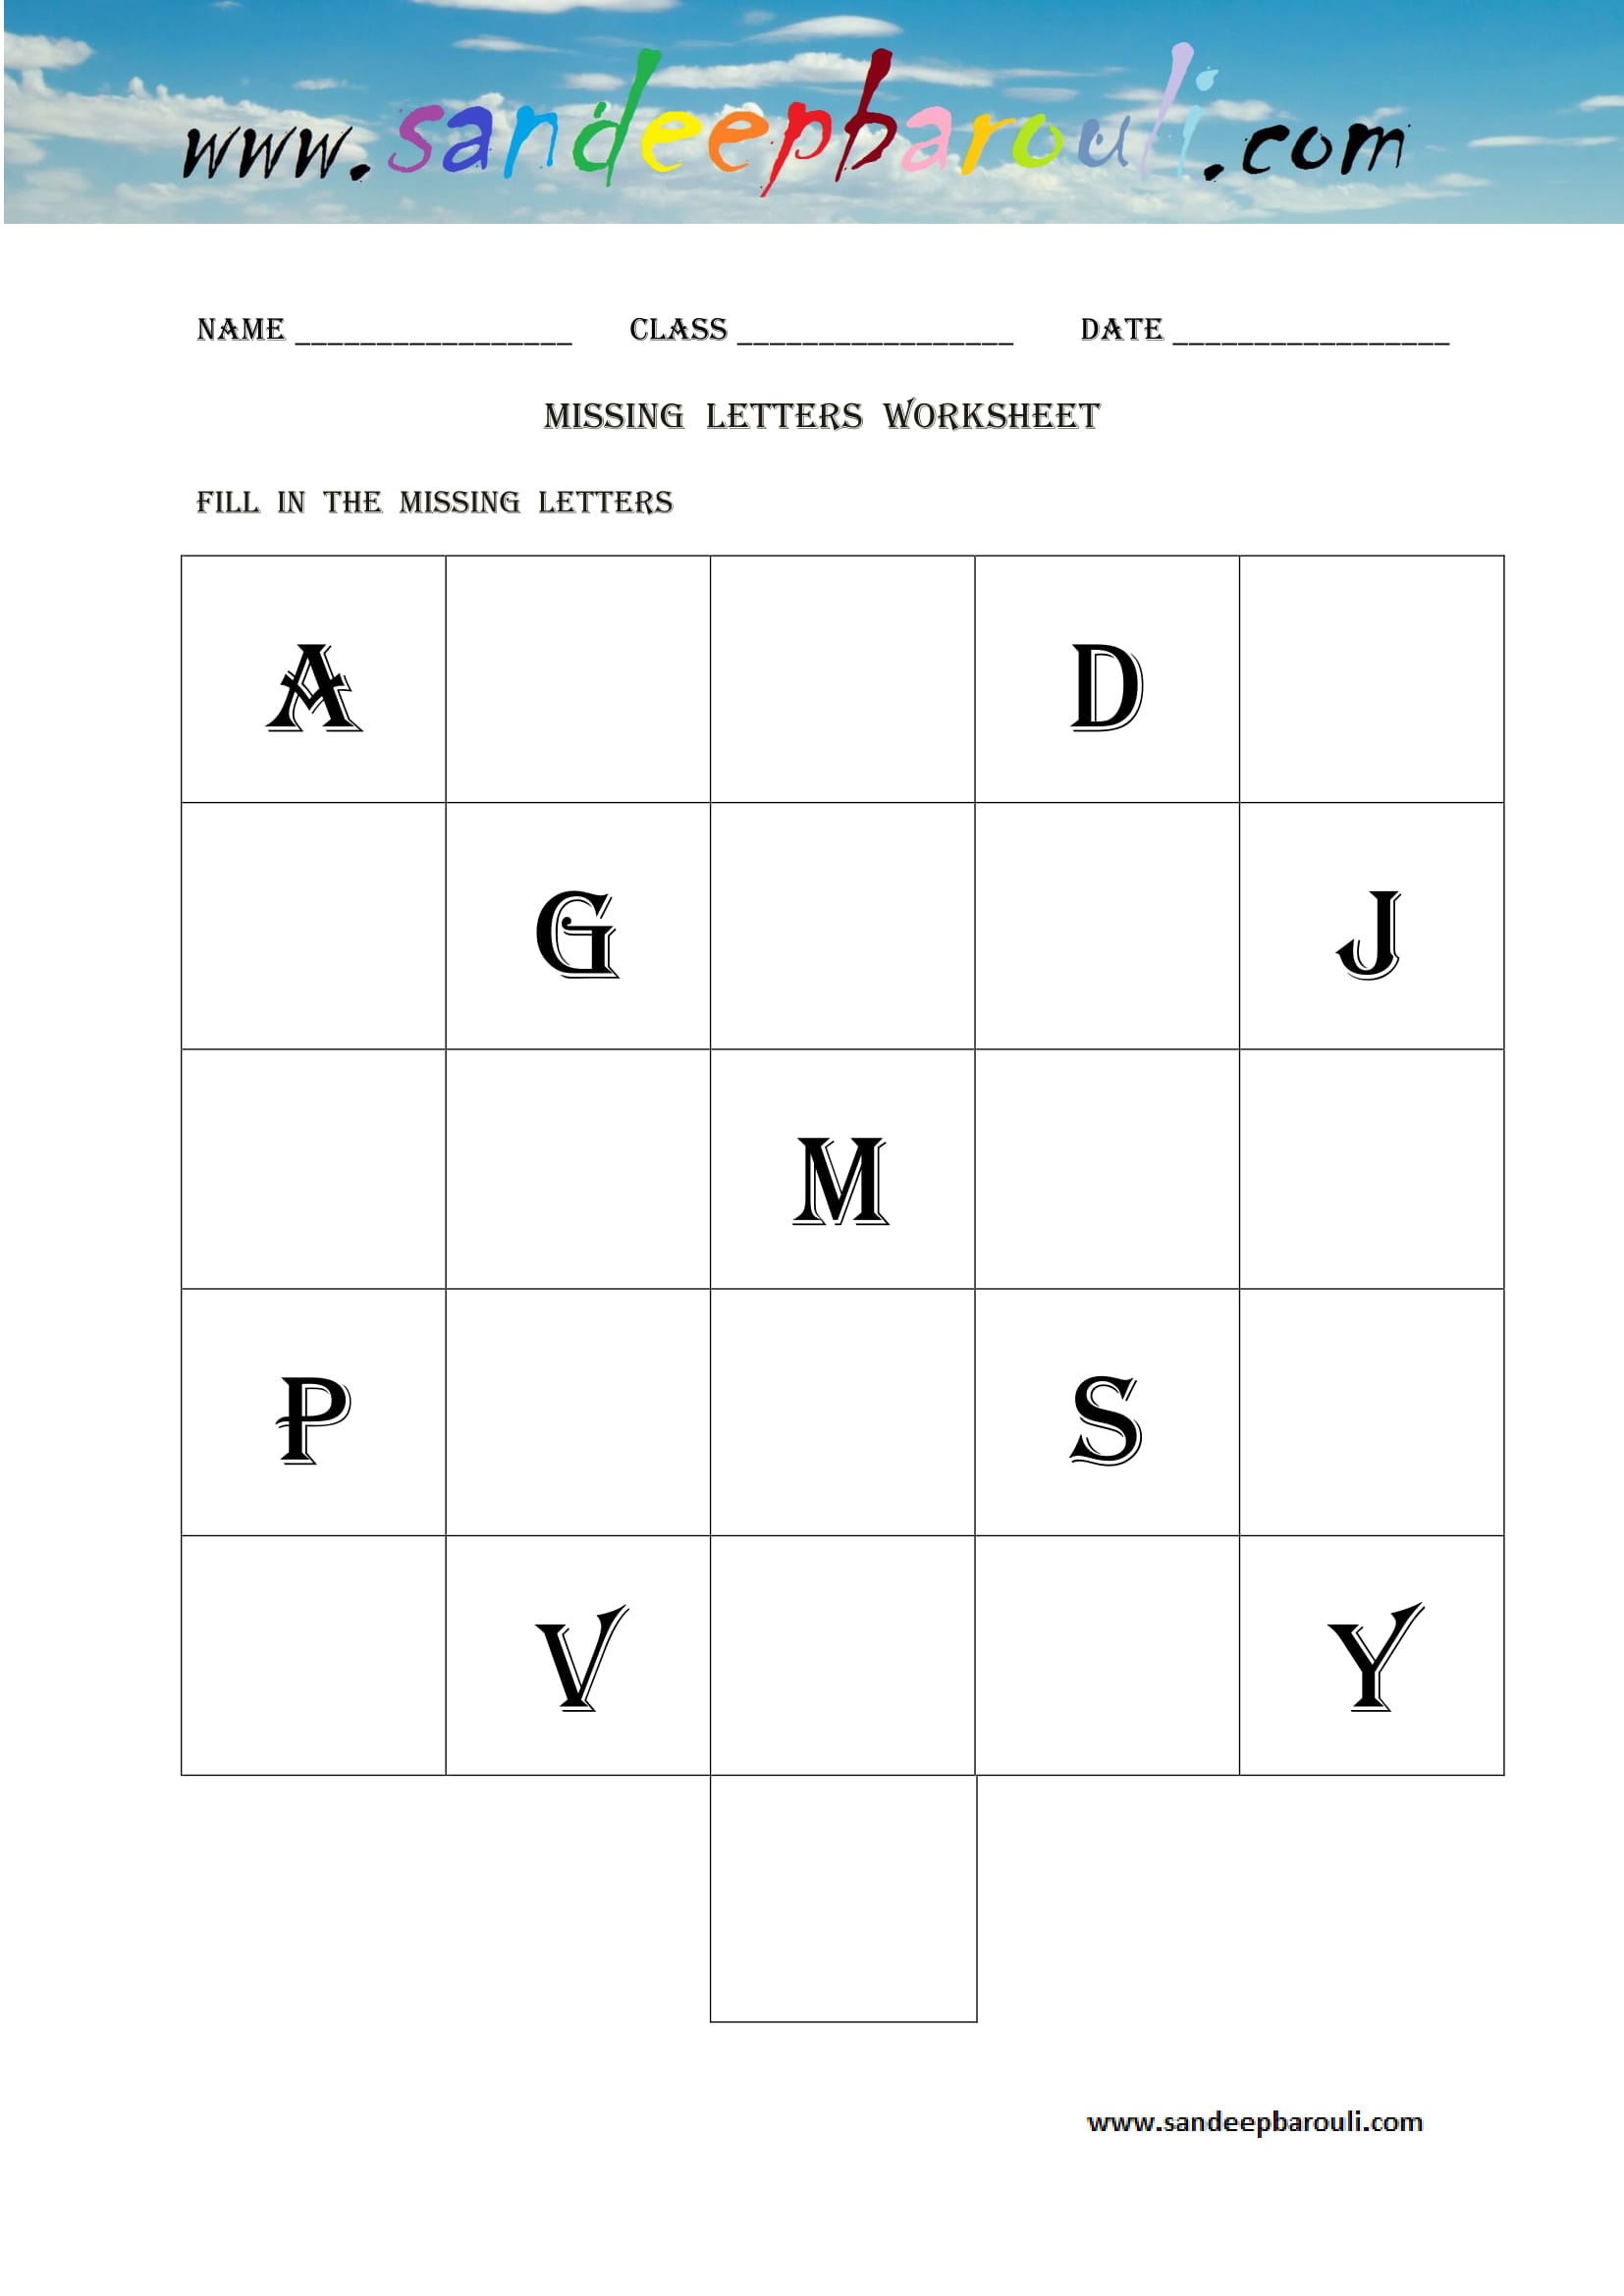 Missing letters Worksheet (3)